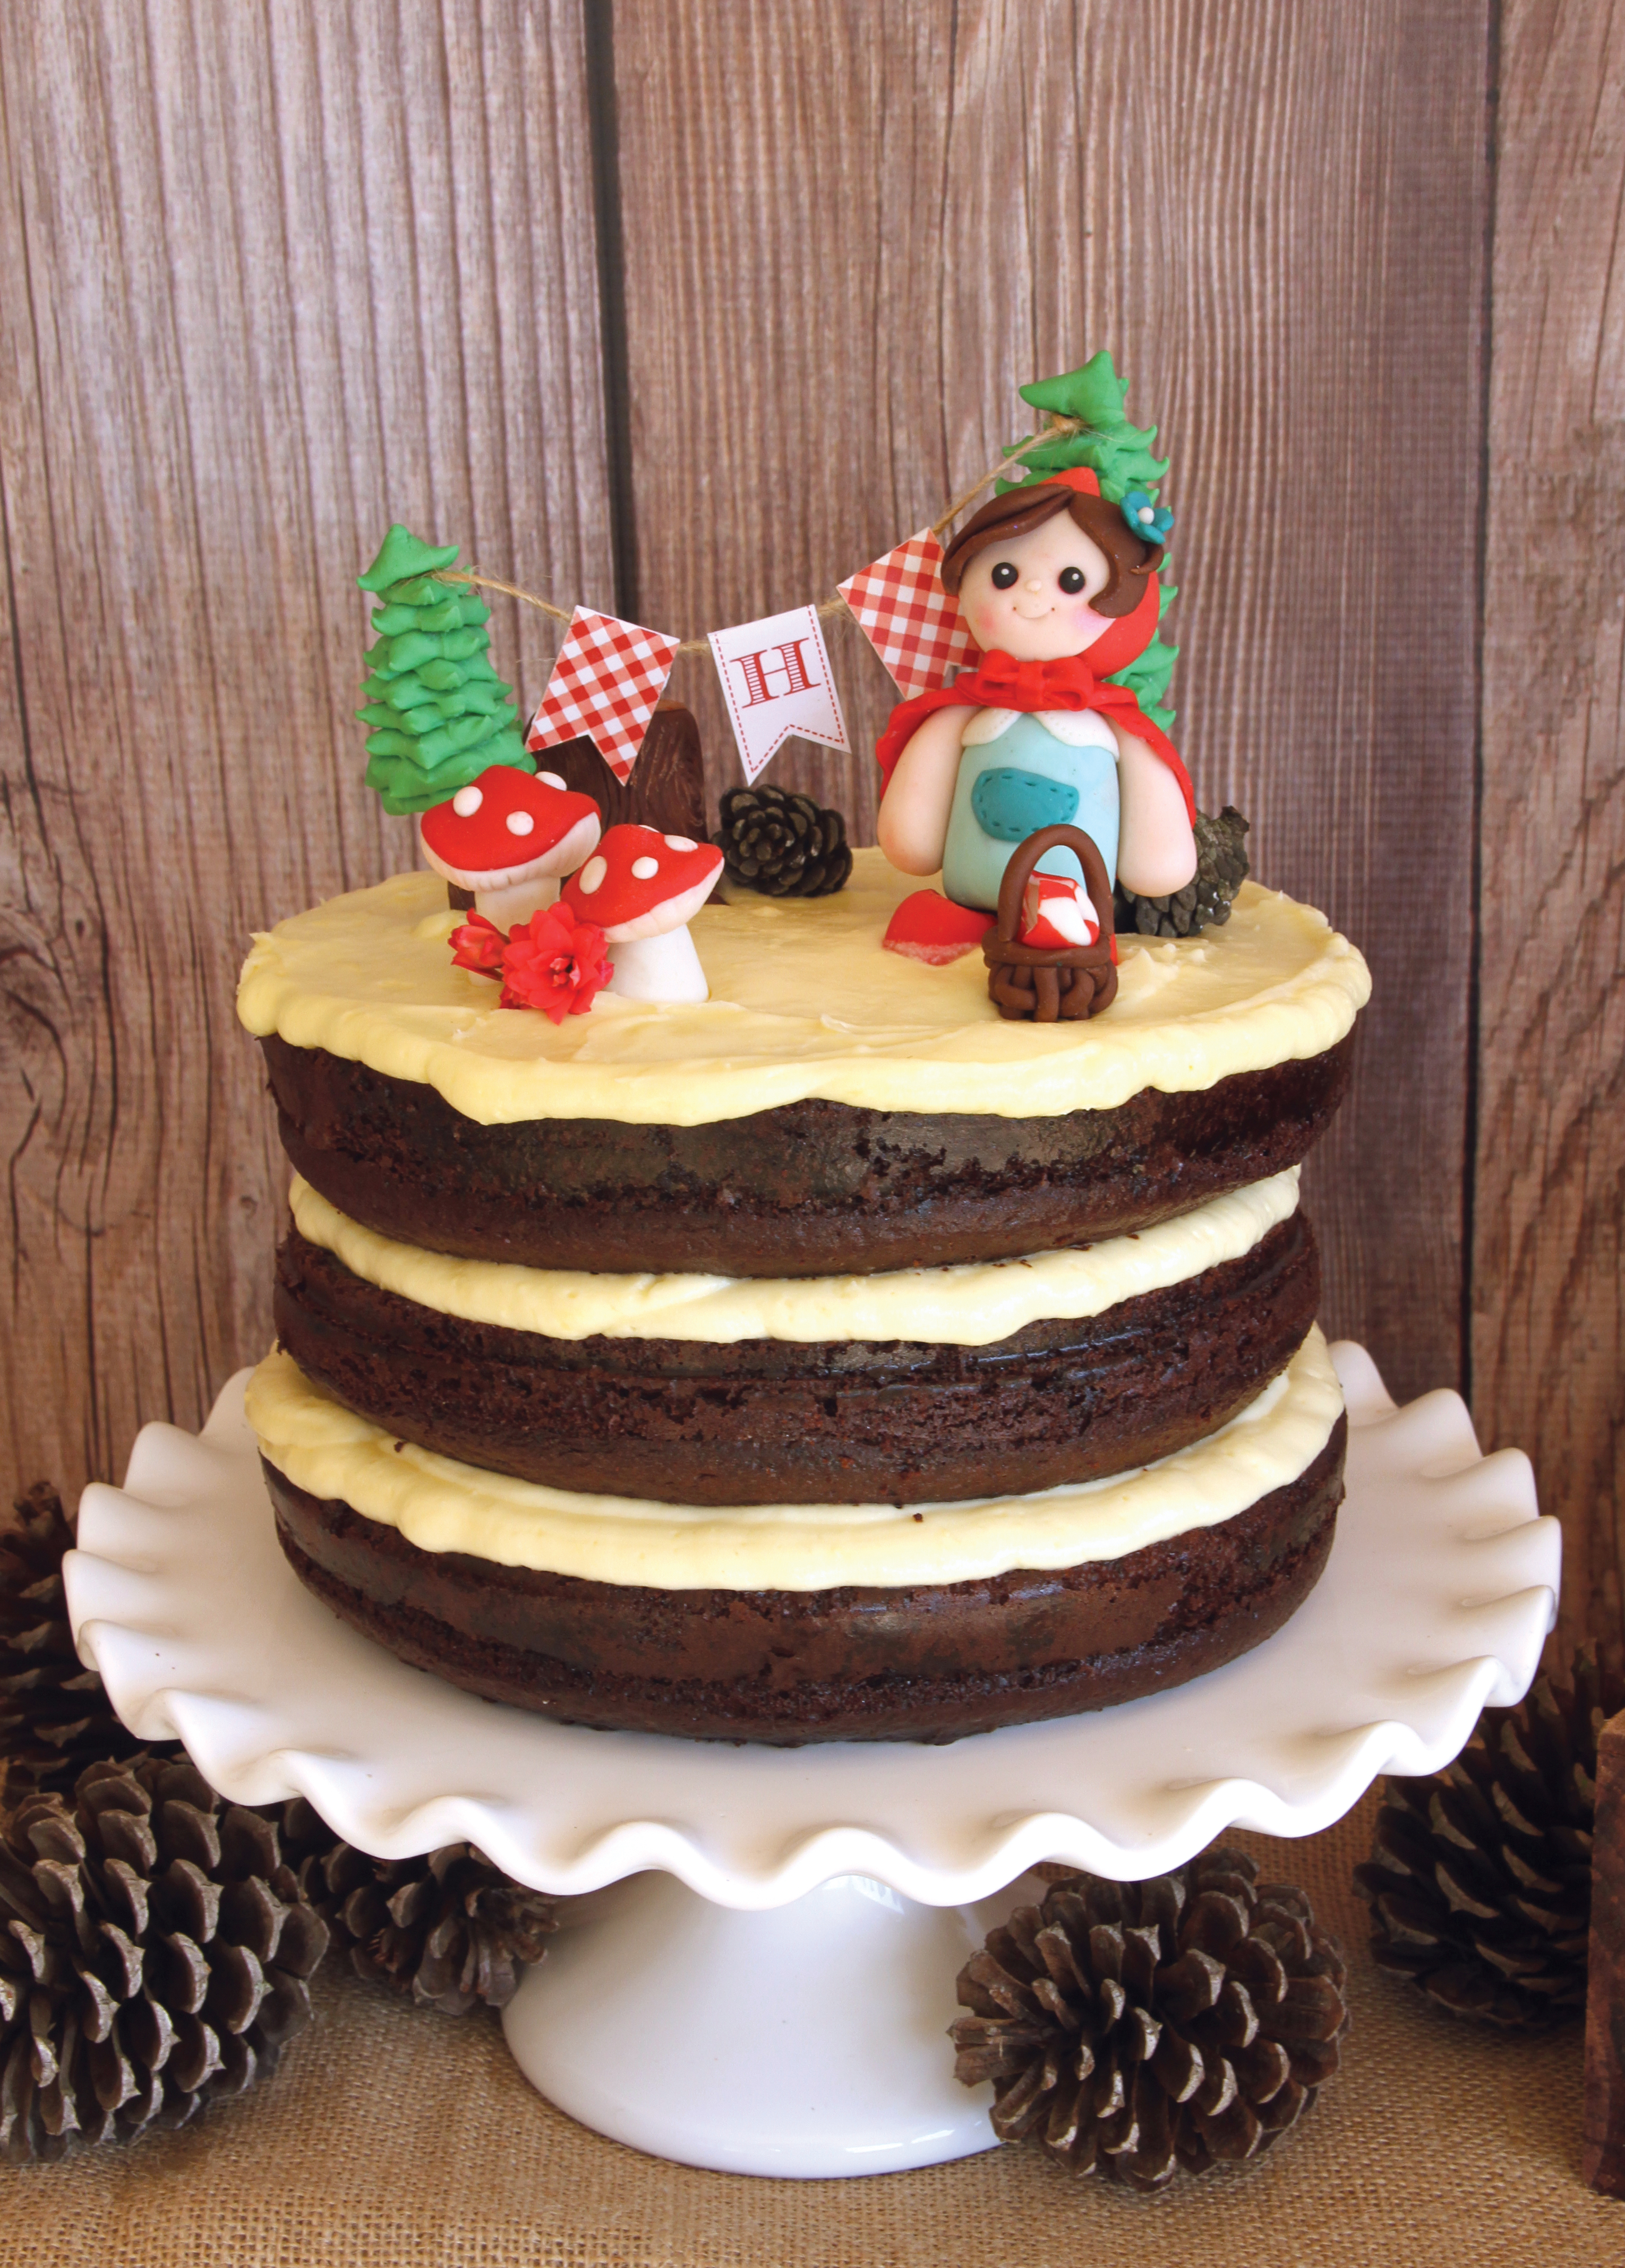 Little Red Riding Hood Cake  Birthday cake kids, Themed cakes, Girl cakes